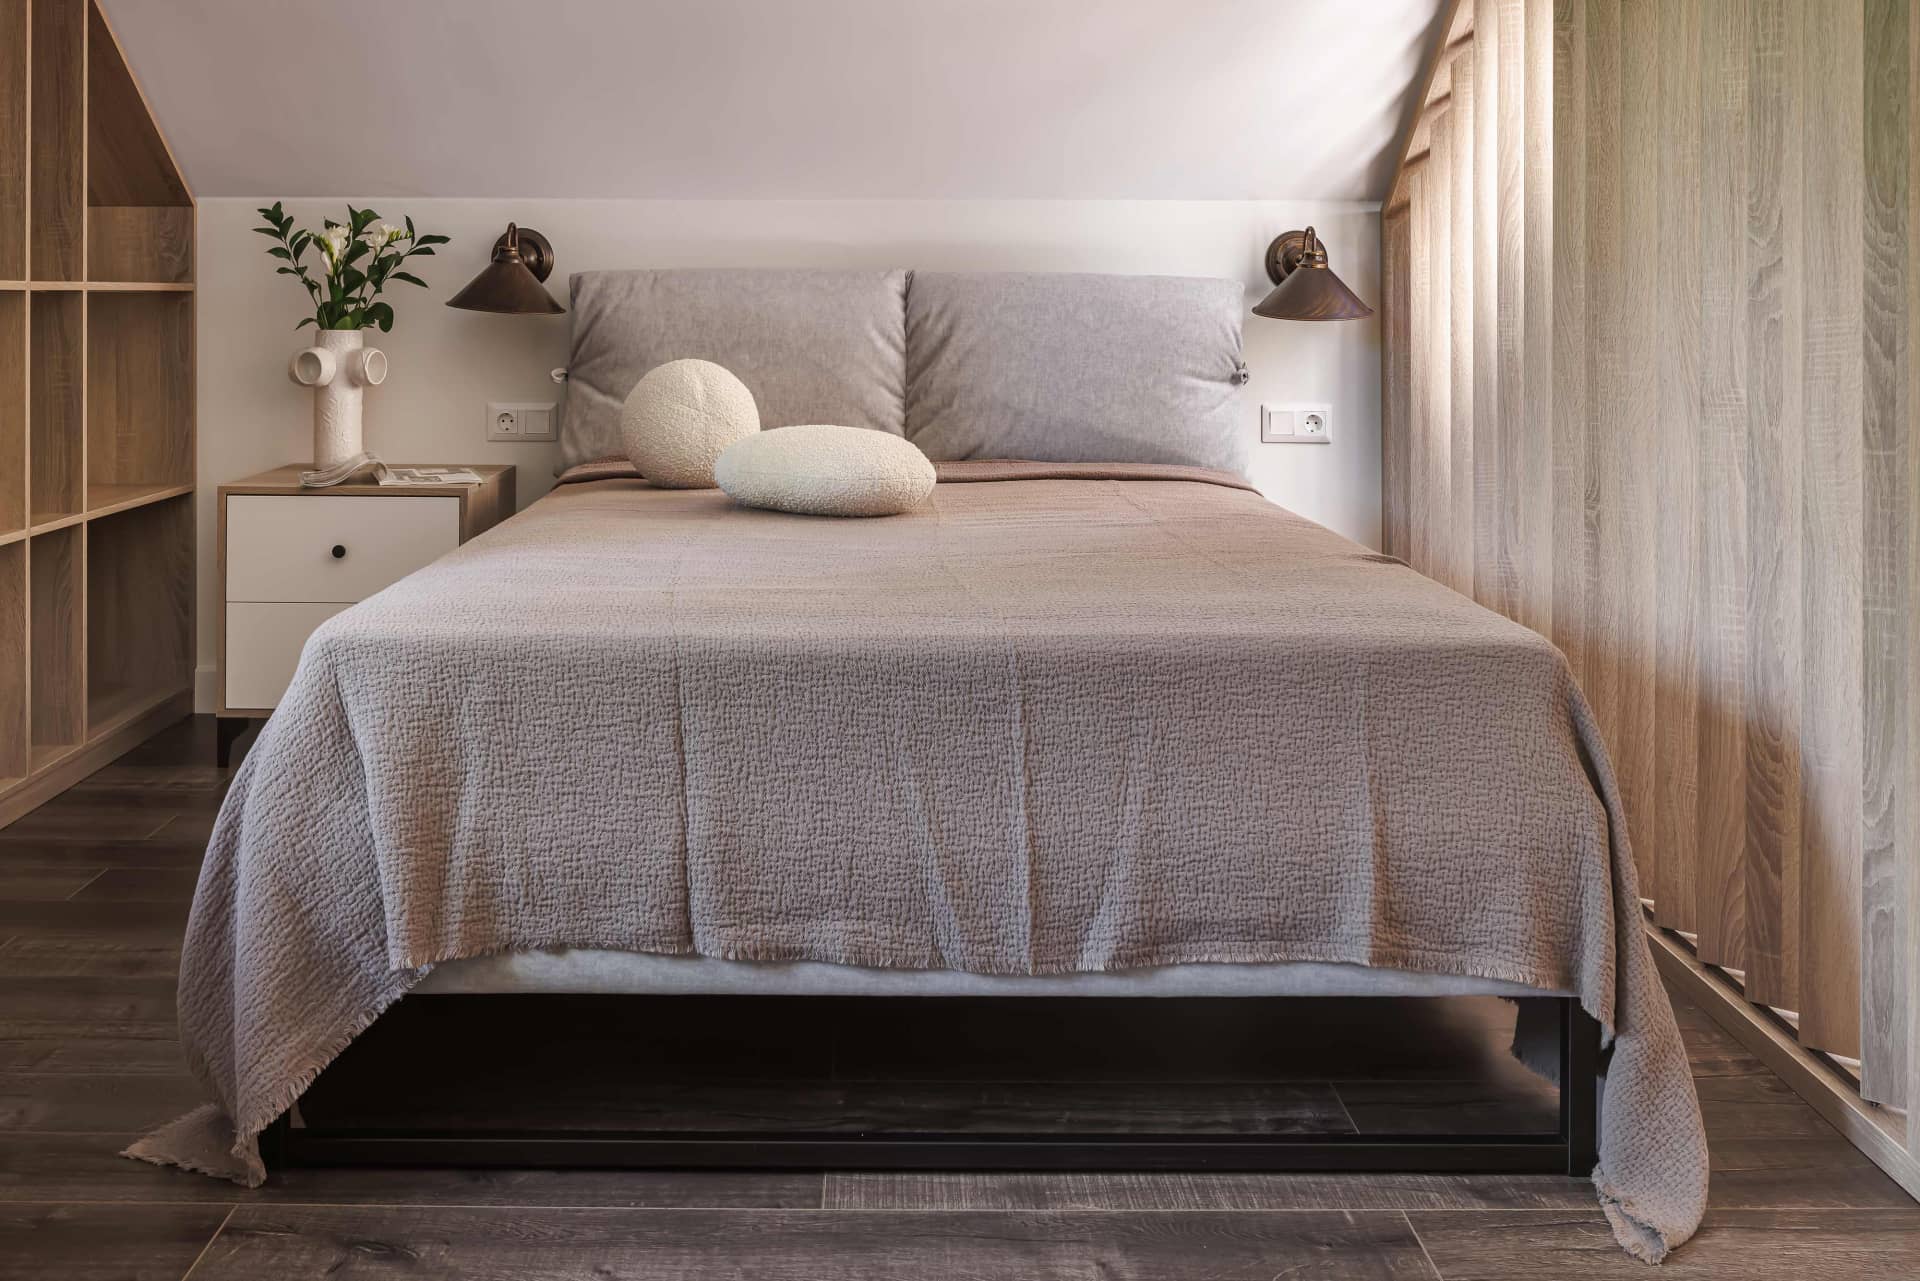 Парные бра в изголовье кровати уравновешивают асимметричную компоновку мебели